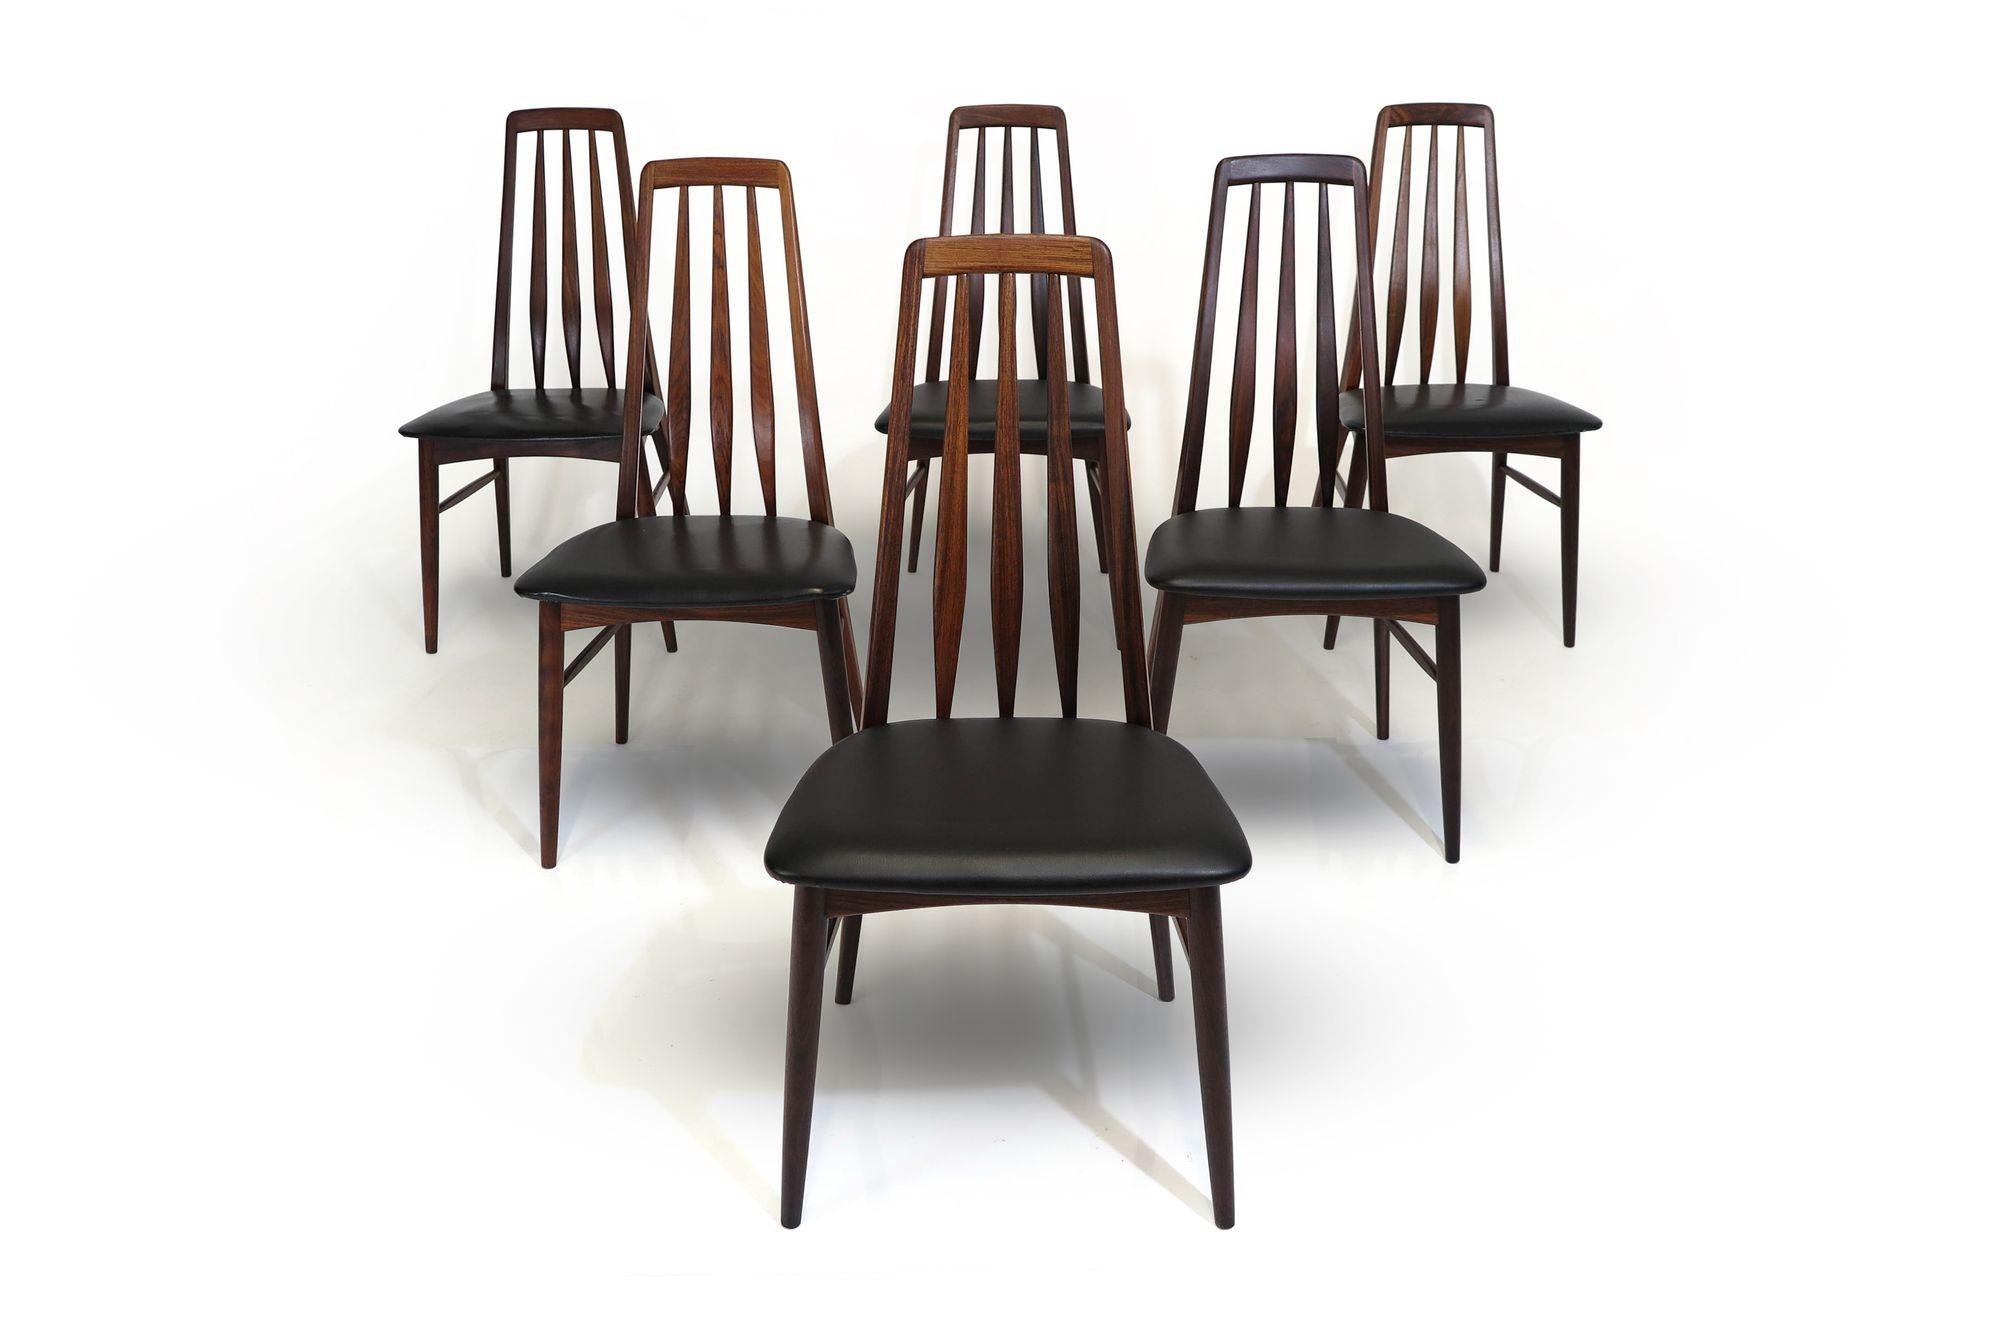 Sechs Esszimmerstühle aus Palisanderholz, entworfen von Niels Koefoed für Koefoeds Hornslet, 1962 Dänemark. Die Stuhlrahmen sind aus massivem Palisanderholz gefertigt und verfügen über abgewinkelte Rückenlehnen mit Lattenrost, die eine komfortable